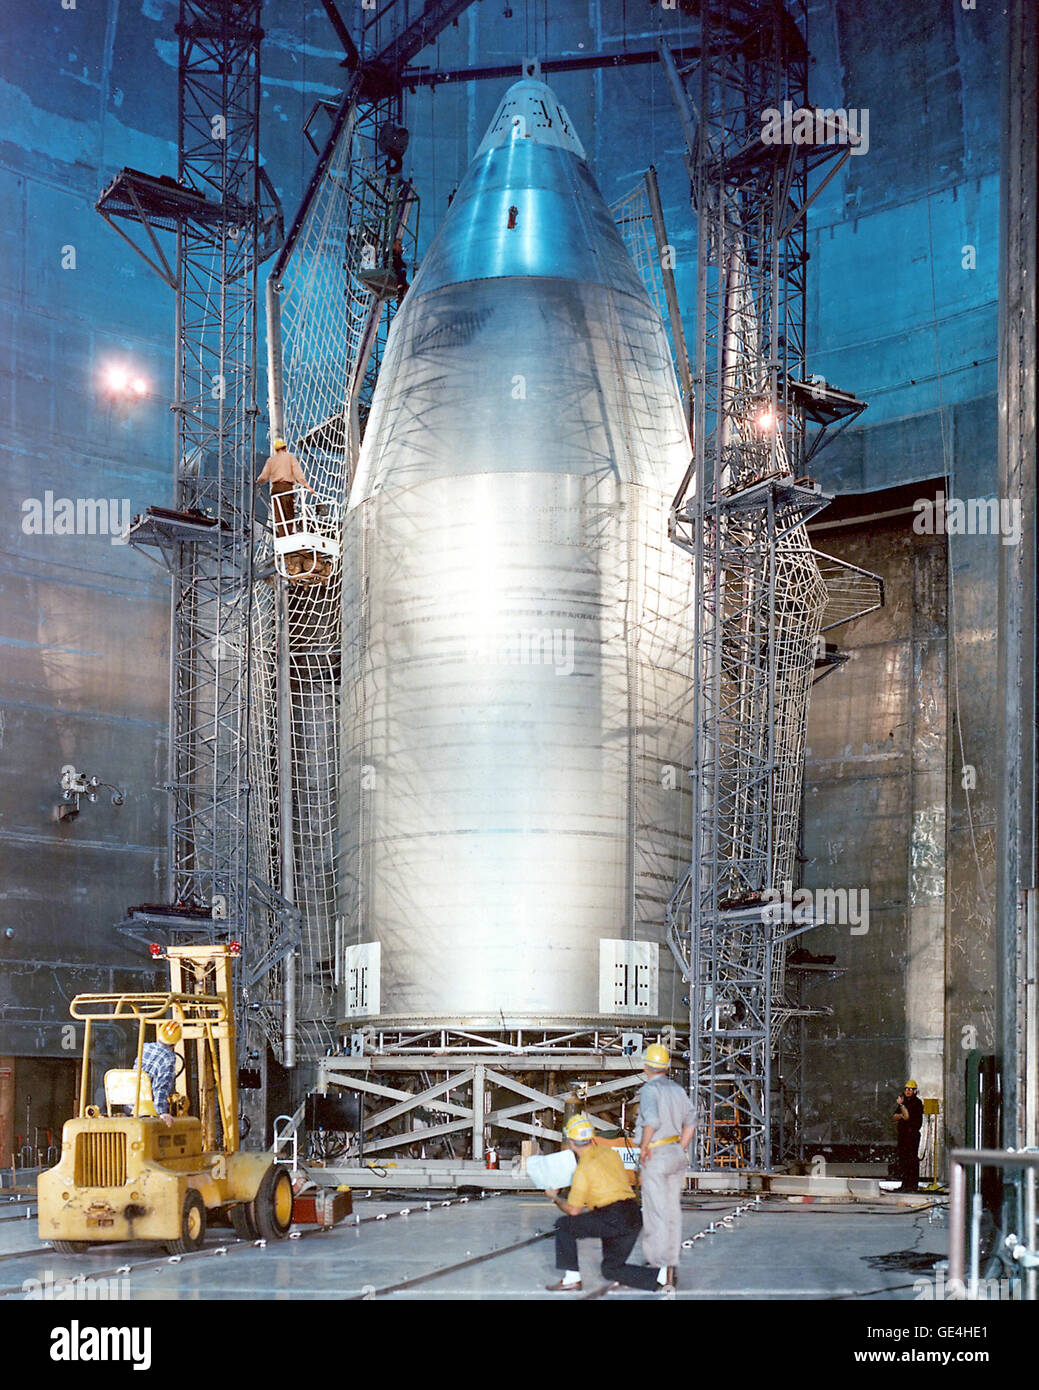 Skylab Sindone installato in NASA Lewis Research Center (ora noto come Il Glenn Research Center) Prugna Brook station, spazio di impianto di alimentazione. La sindone protetto la sezione superiore della Skylab stazione spaziale, compresa la sua energia solare array. Quando fu costruita, la potenza spaziale (SPF) era il più grande del mondo di camera a vuoto. Sorge più di 122 piedi alto, 100 piedi in diametro e fornisce un ambiente in depressione per lo studio di propulsione spaziale. Originariamente commissionato per il nucleare di propulsione elettrica studi, la SPF è stata rimessa in servizio per l'uso attuale e futuro nella ongs Foto Stock